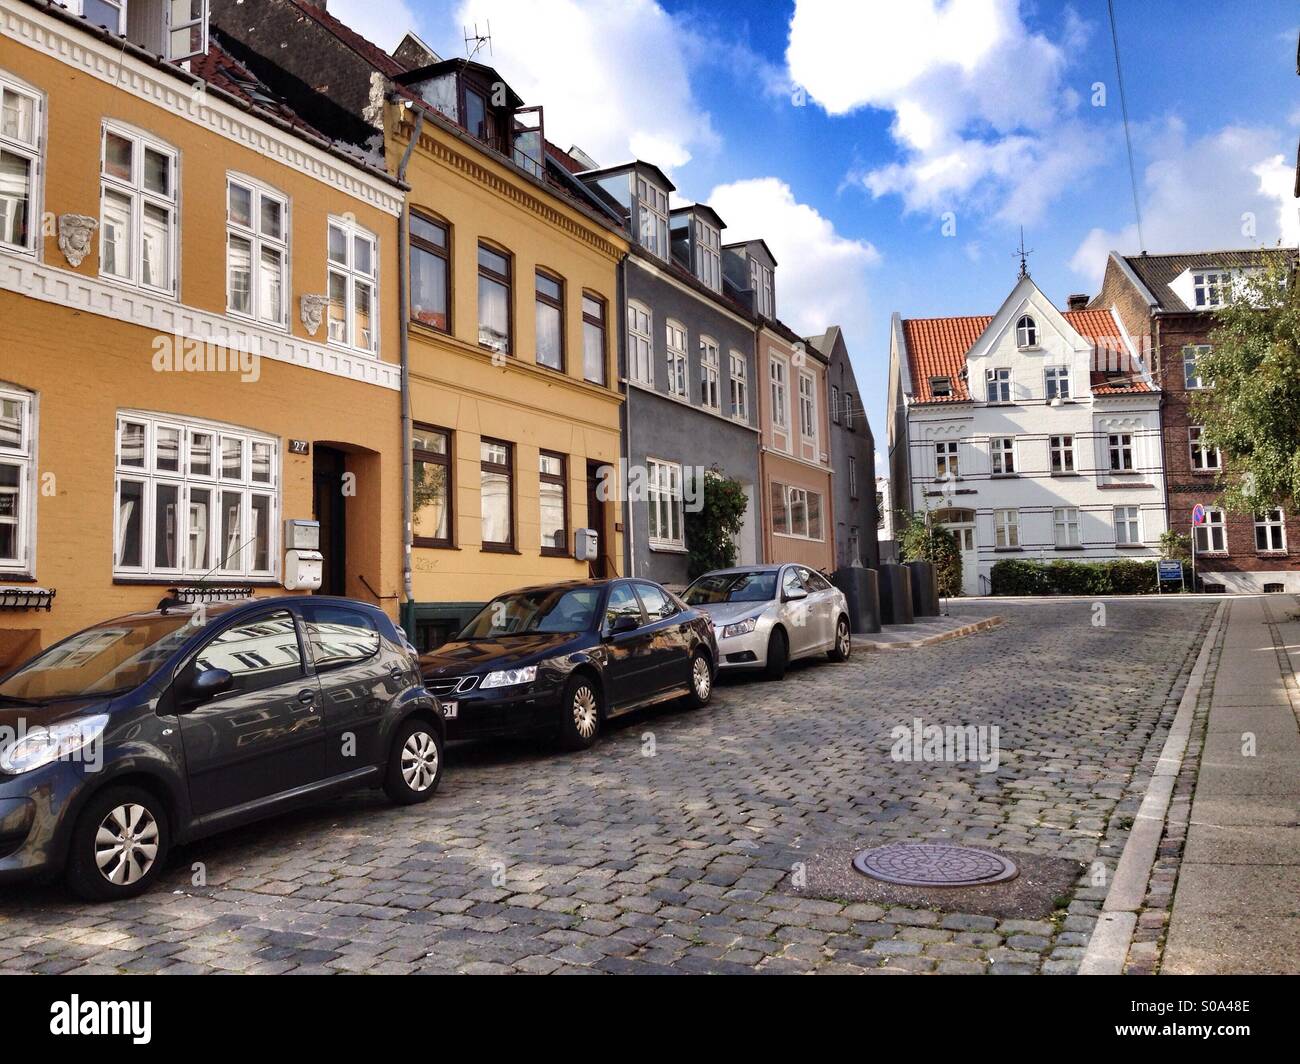 Città scandinave scena, case colorate in una stretta strada di pietra in una giornata di sole con un cielo azzurro con poche nuvole, nel centro di Aarhus, penisola dello Jutland, Danimarca Foto Stock